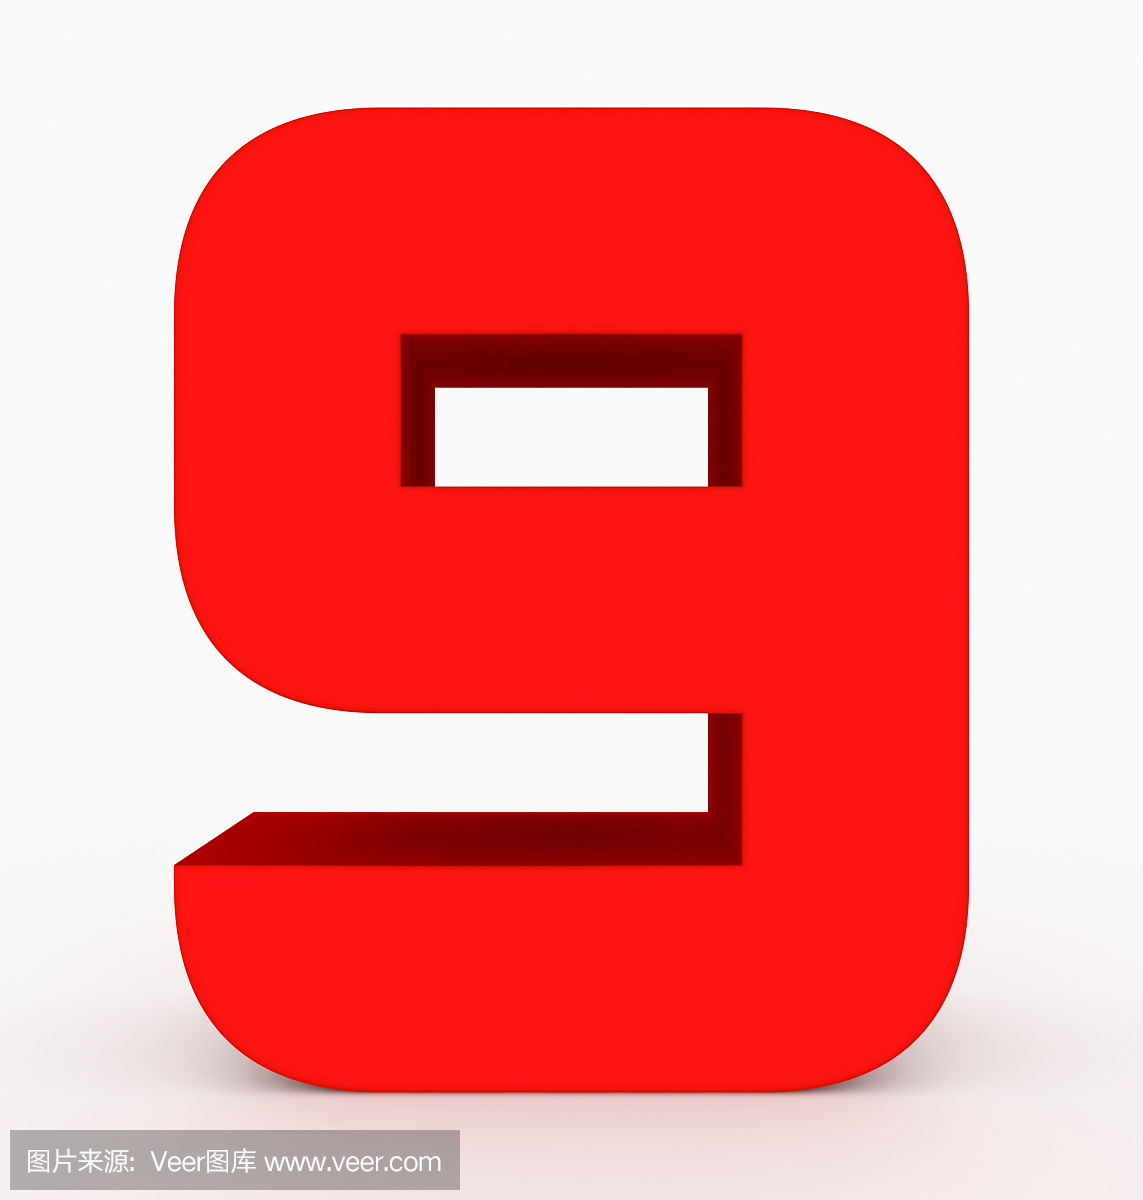 数字9 3d立方体圆的红色隔绝在白色